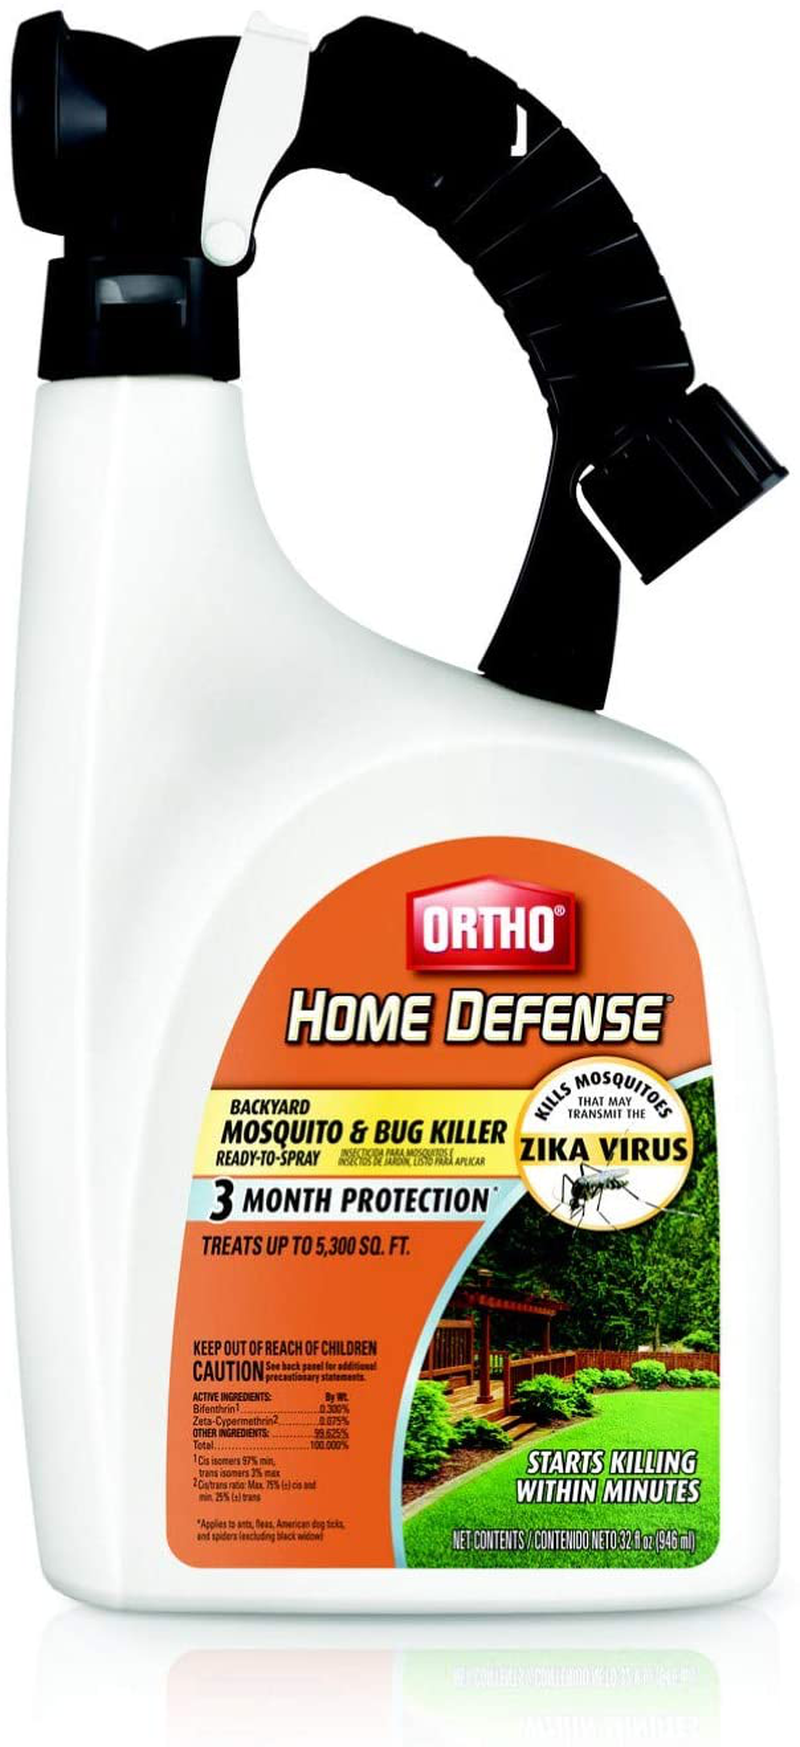 Ortho Home Defense Backyard Mosquito and Bug Killer Area Fogger 16 oz.